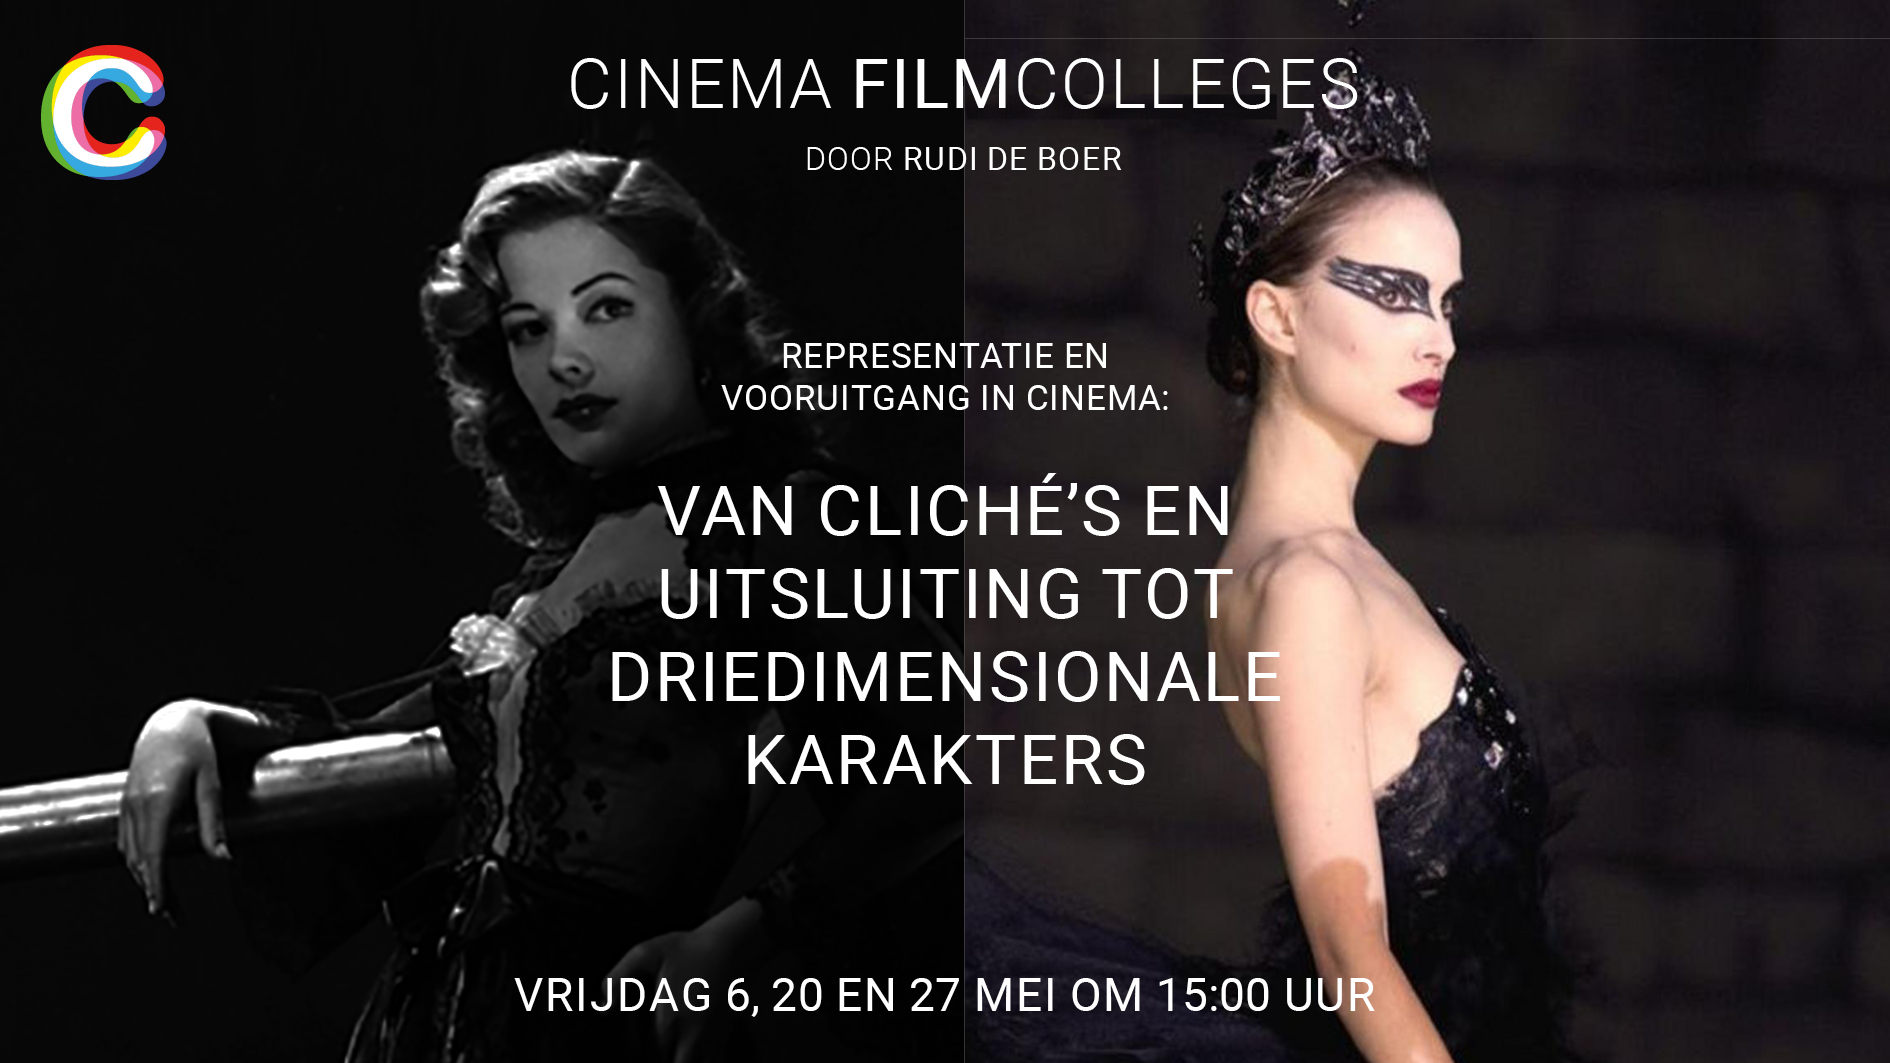 Cinema Middelburg presenteert een nieuwe reeks van 3 filmcolleges!  Onder leiding van filmwetenschapper Rudi de Boer:  Representatie en vooruitgang in de cinema